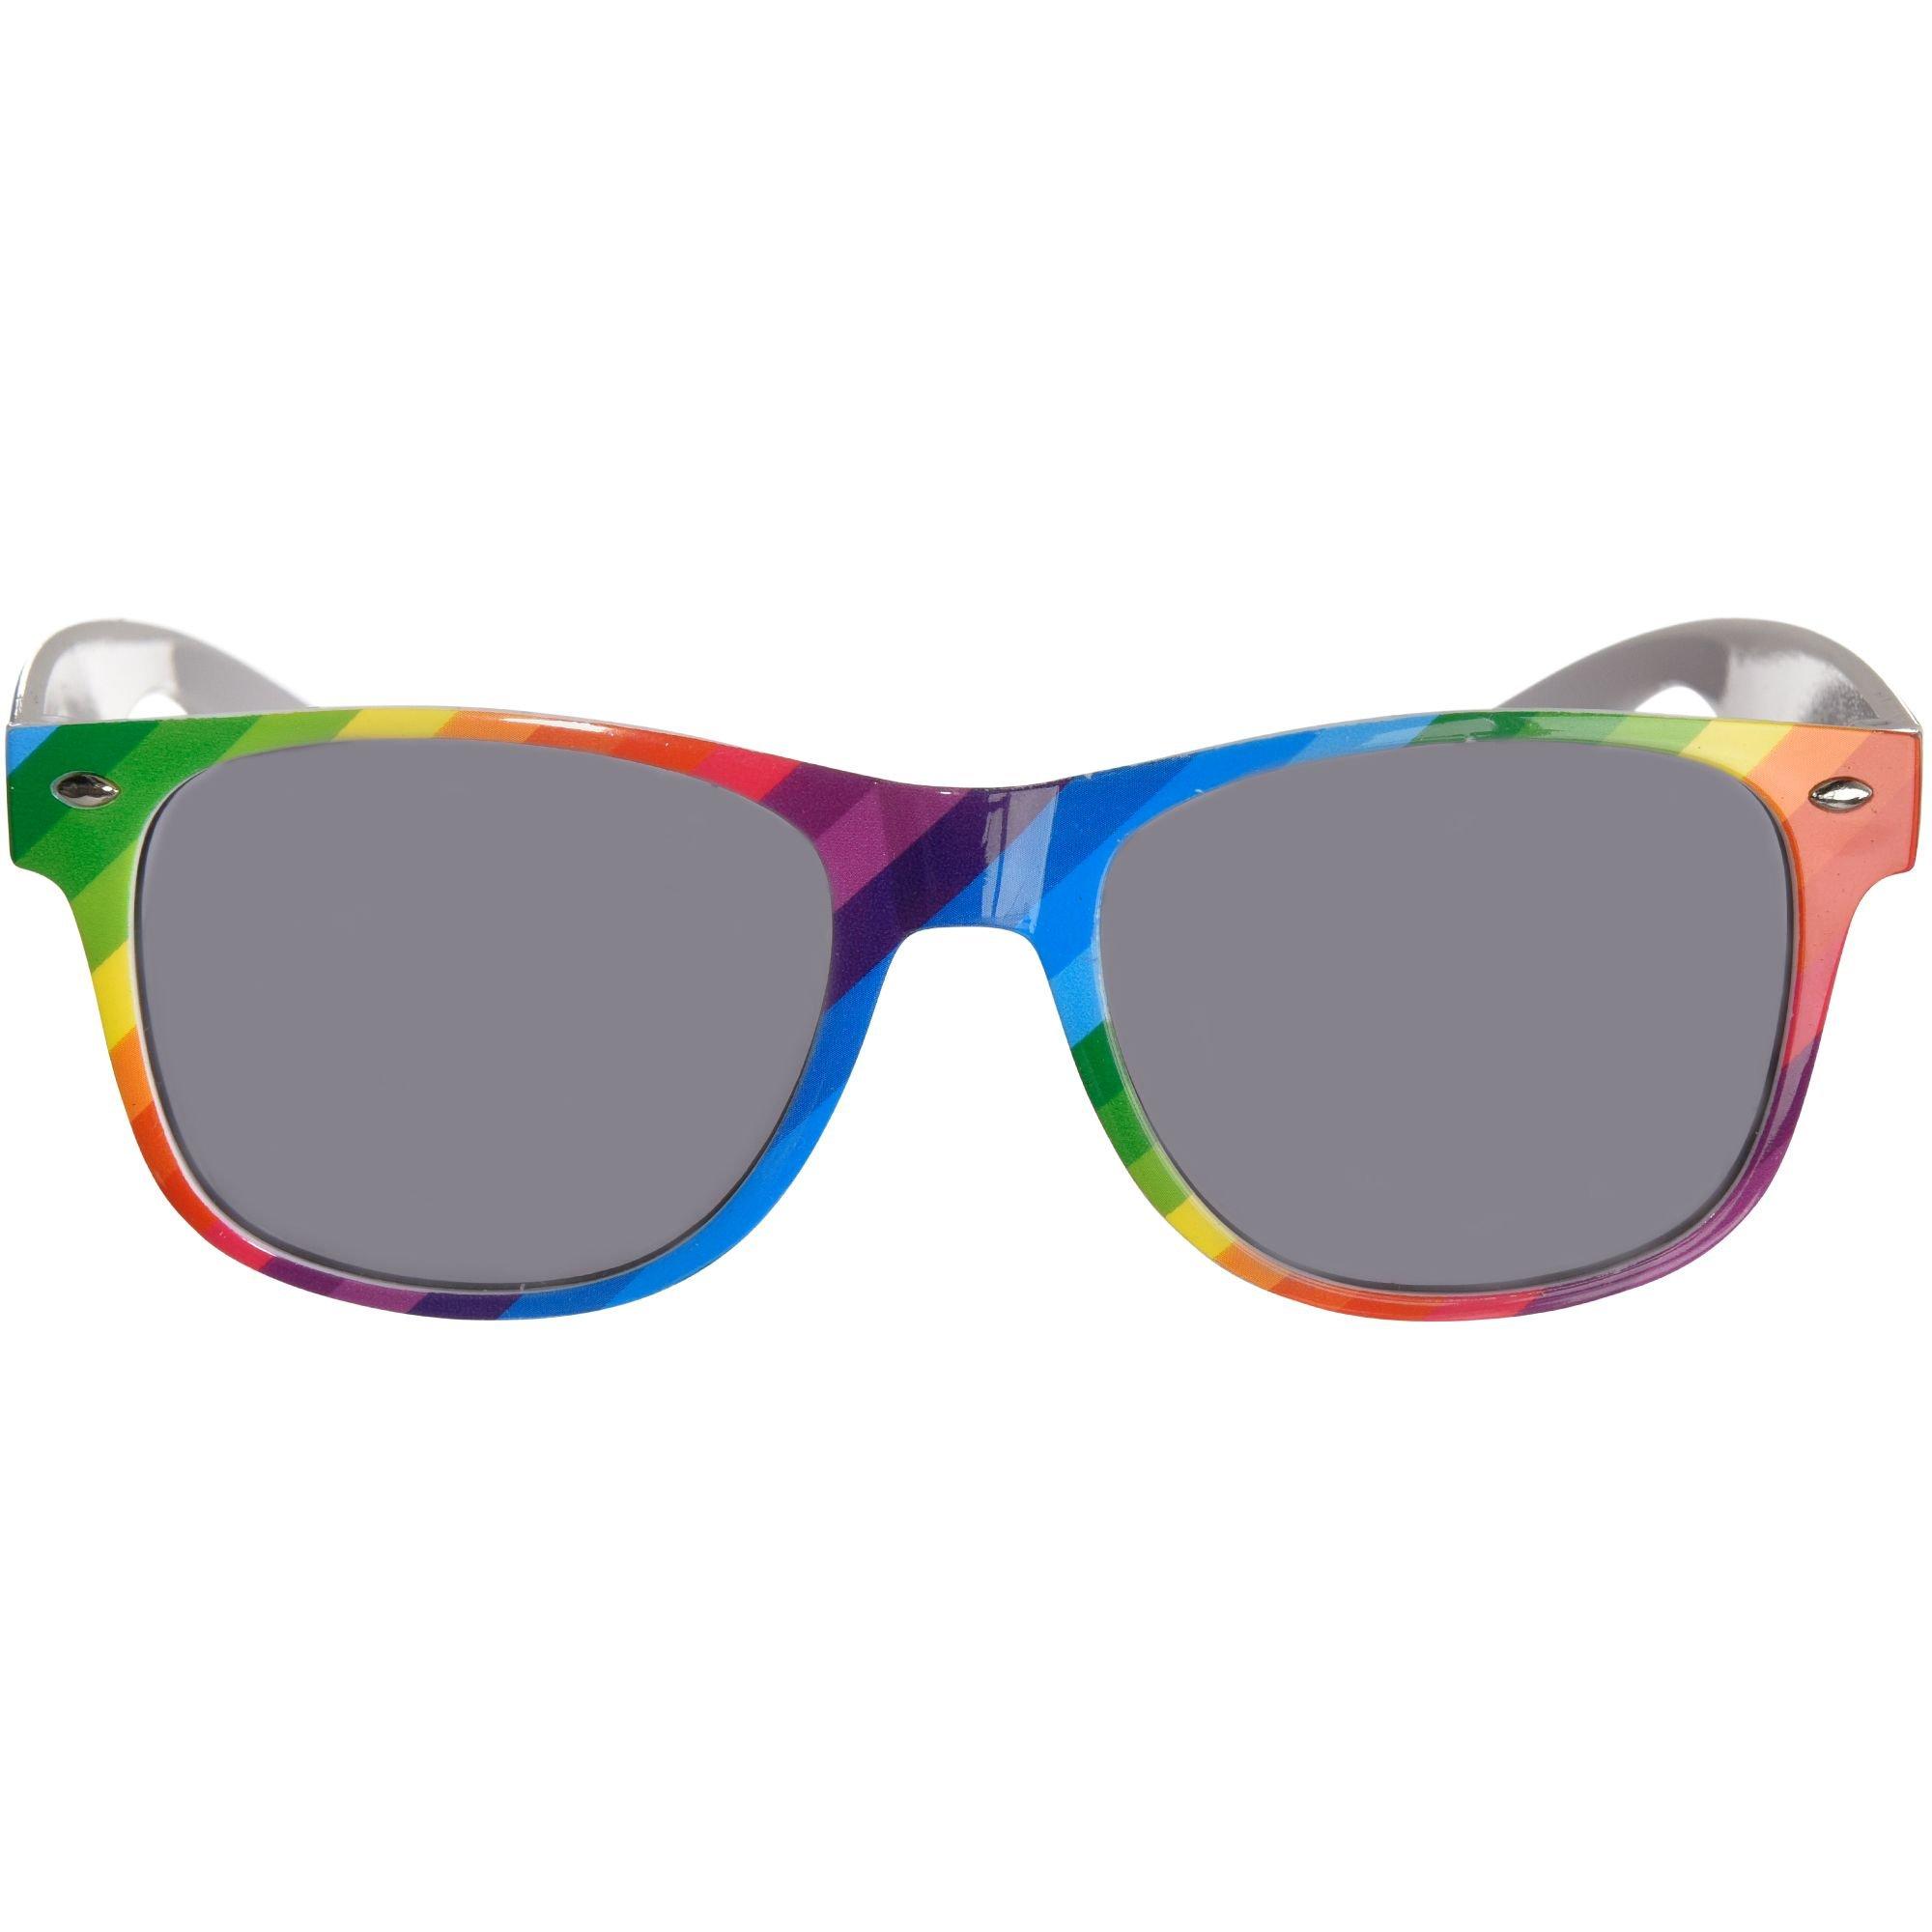 Accessories  Iridescent Rainbow Square Sunglasses Club Festival